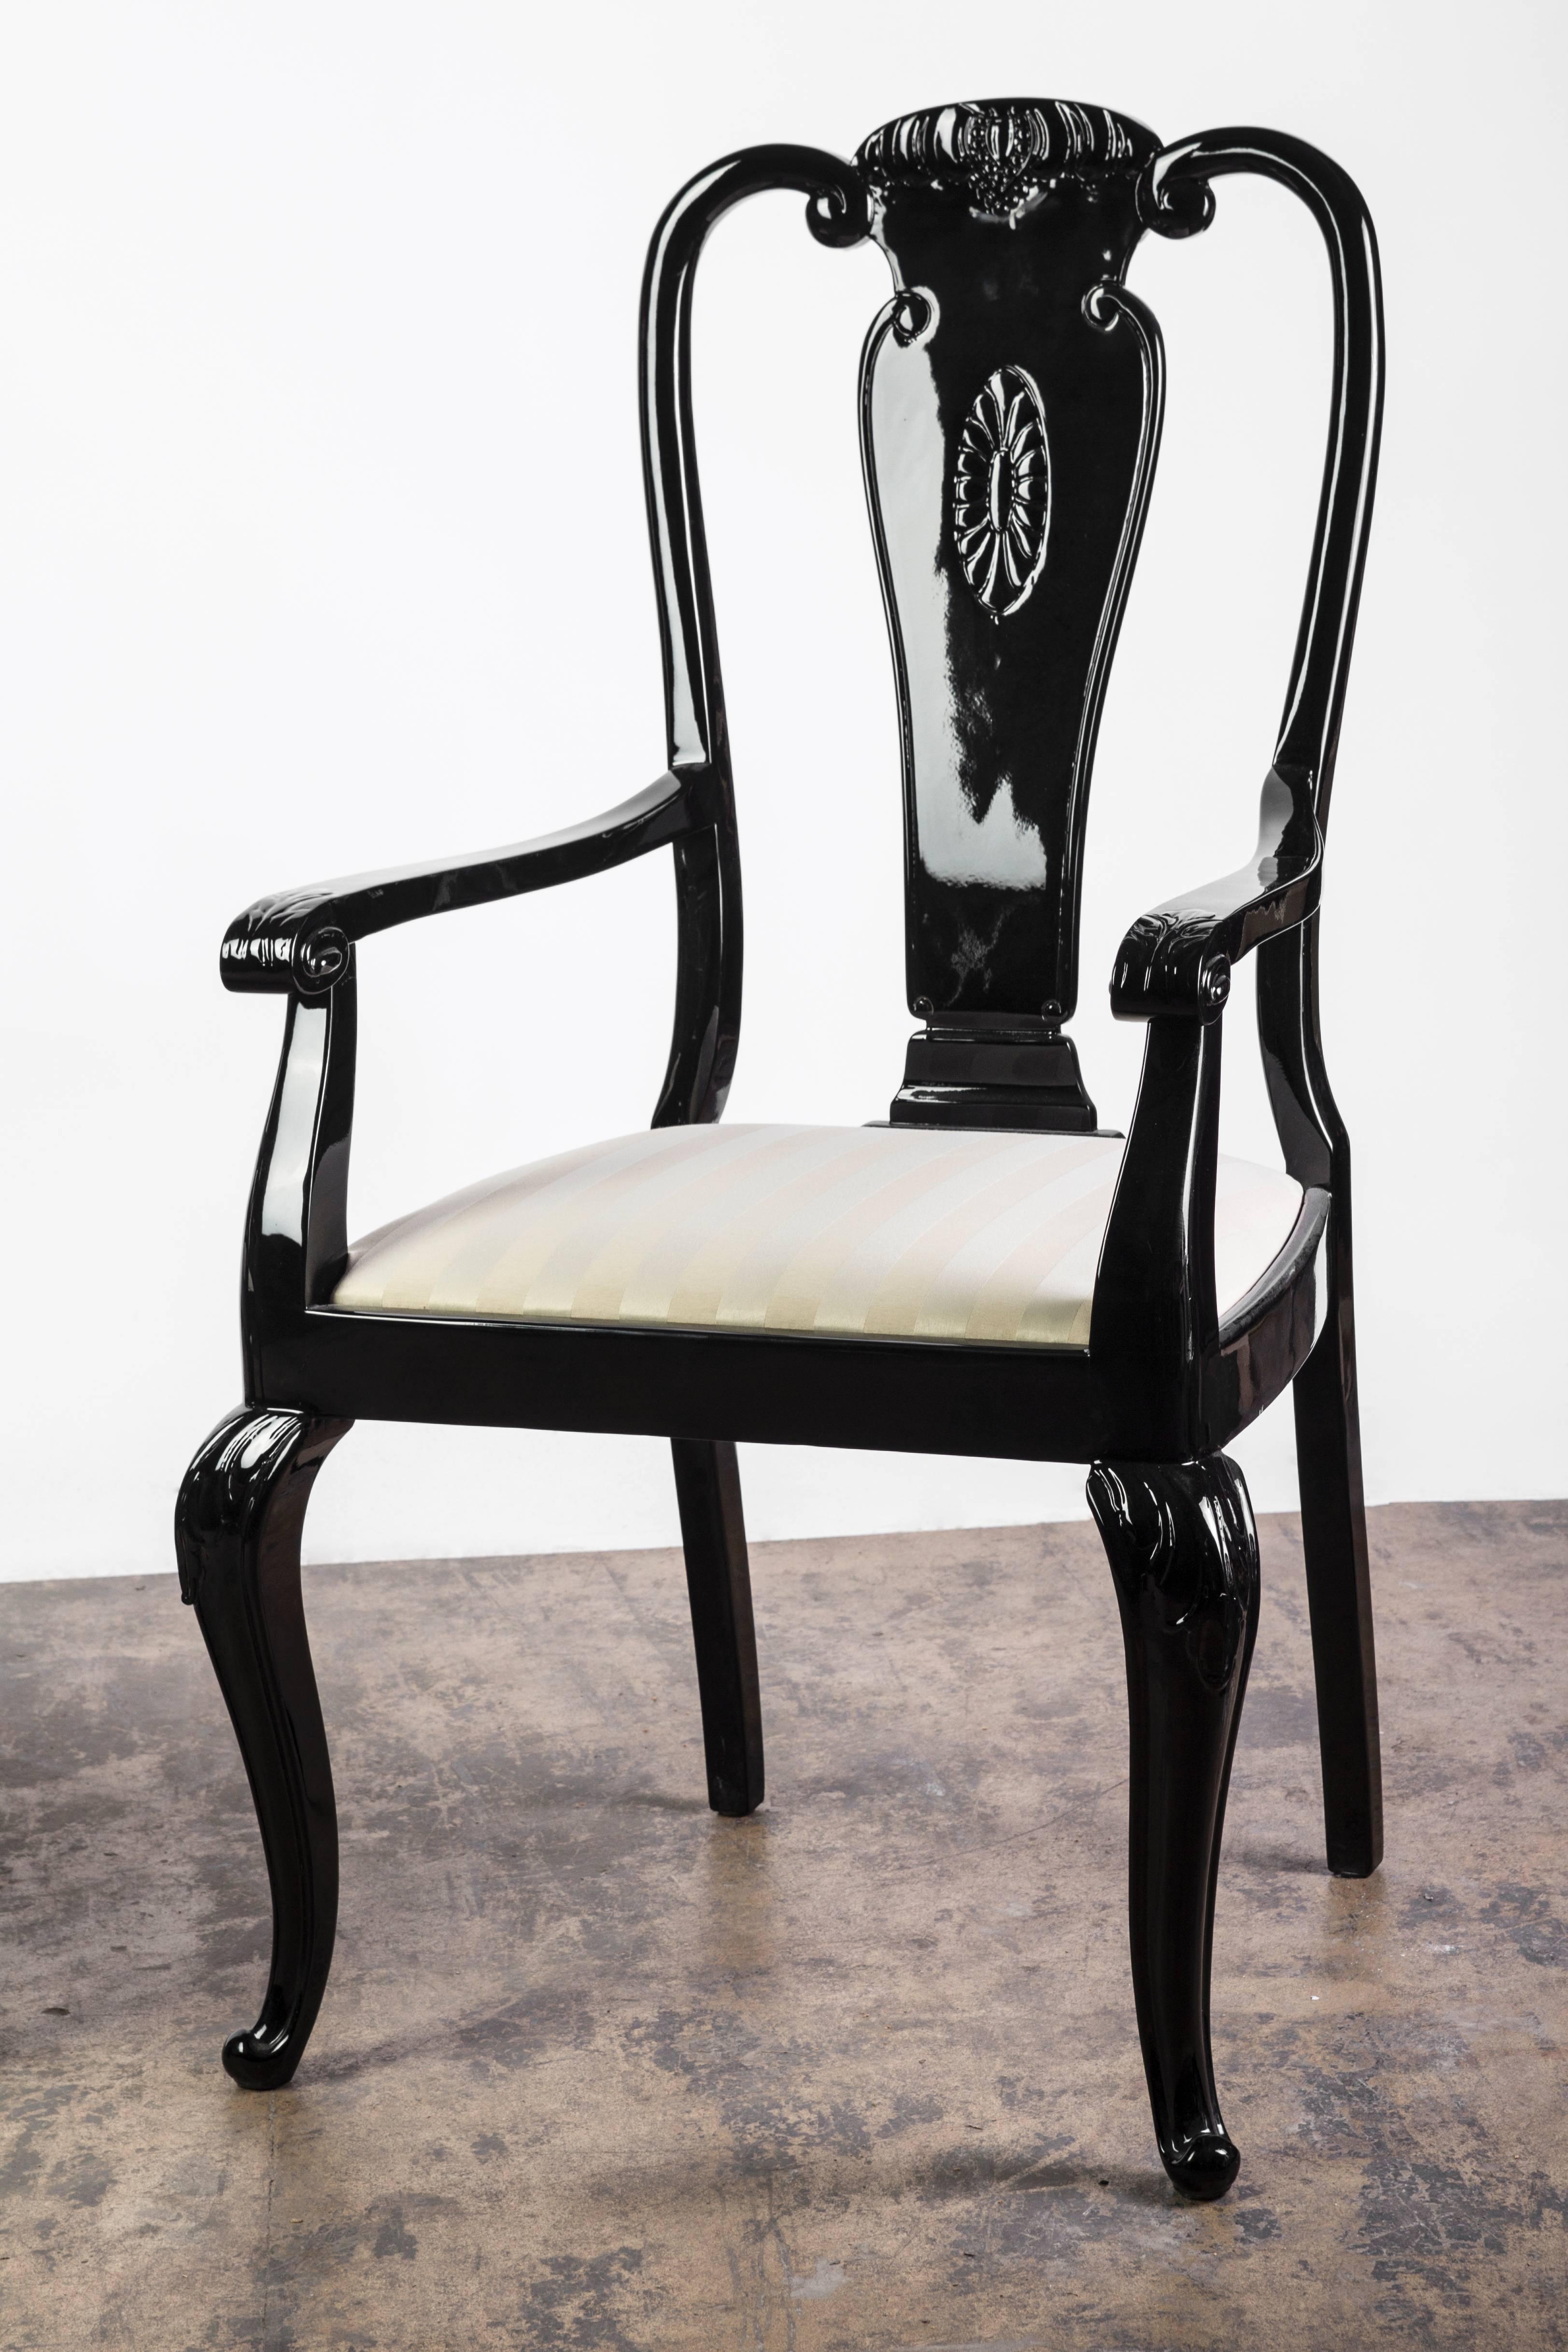 Cette paire sophistiquée de chaises de salle à manger en noyer massif, de style moderniste du milieu du siècle, a été finie en laque noire brillante et présente un design de découpe géométrique du dossier et des pieds cabriolets. Il est doté d'une